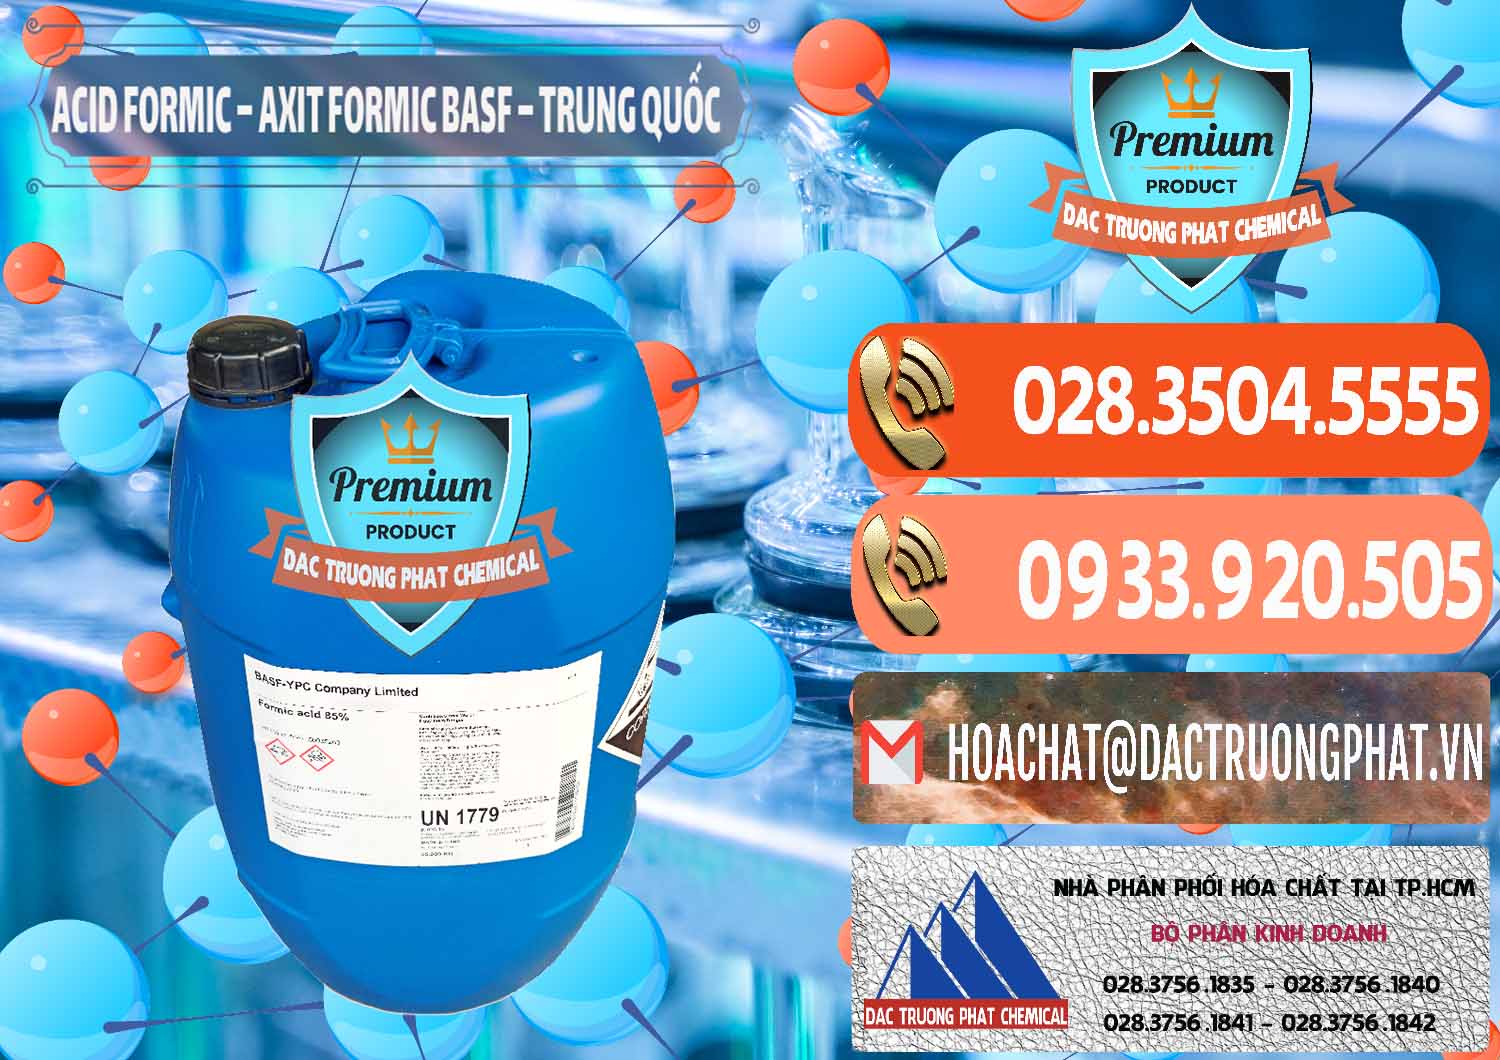 Nơi chuyên cung cấp ( bán ) Acid Formic - Axit Formic BASF Trung Quốc China - 0025 - Công ty bán _ cung cấp hóa chất tại TP.HCM - hoachatmientay.com